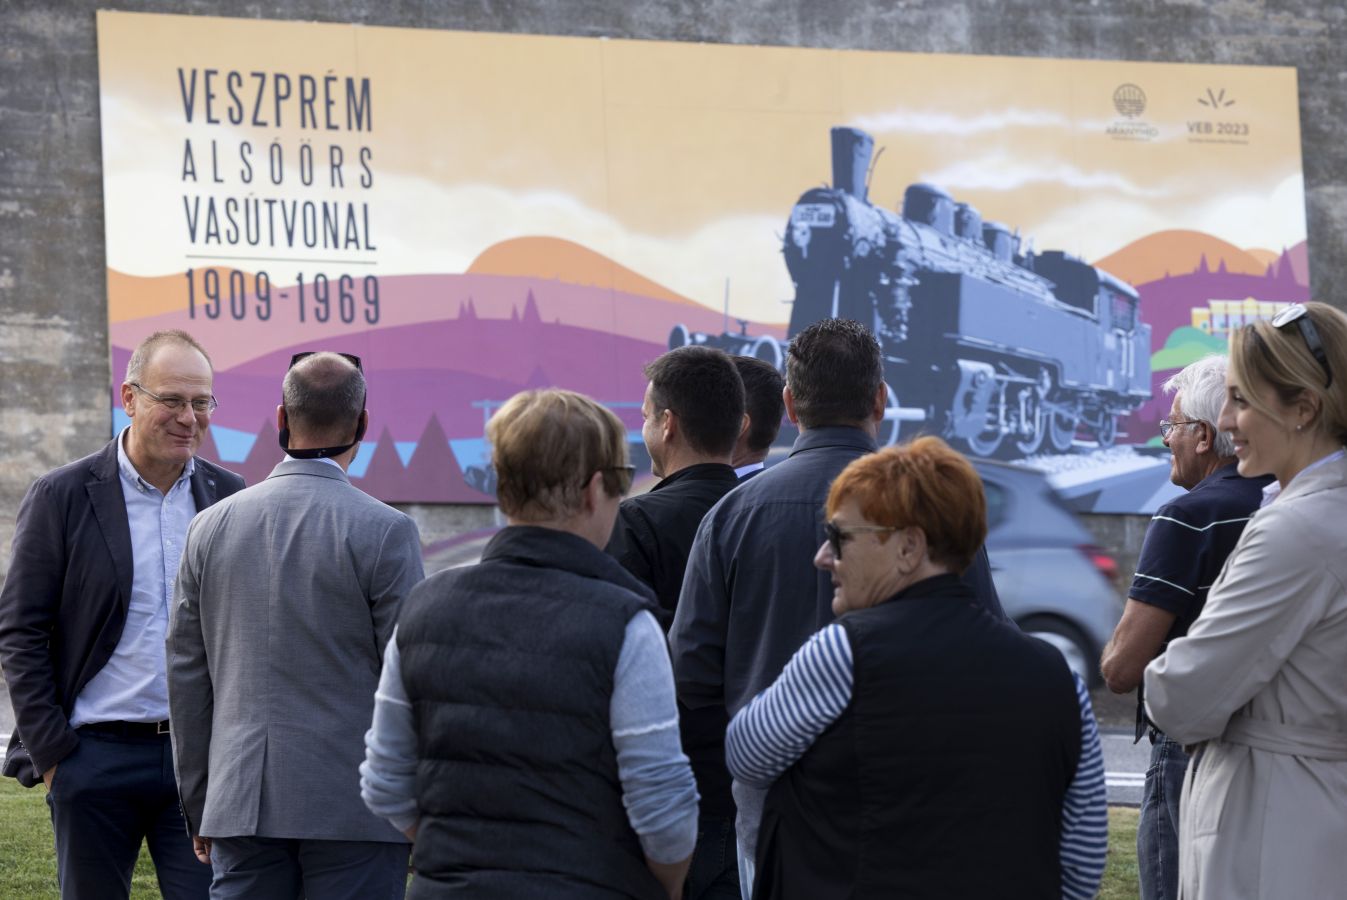 Mozdonyportré állít emléket az Alsóörs-Veszprém vasútvonalnak